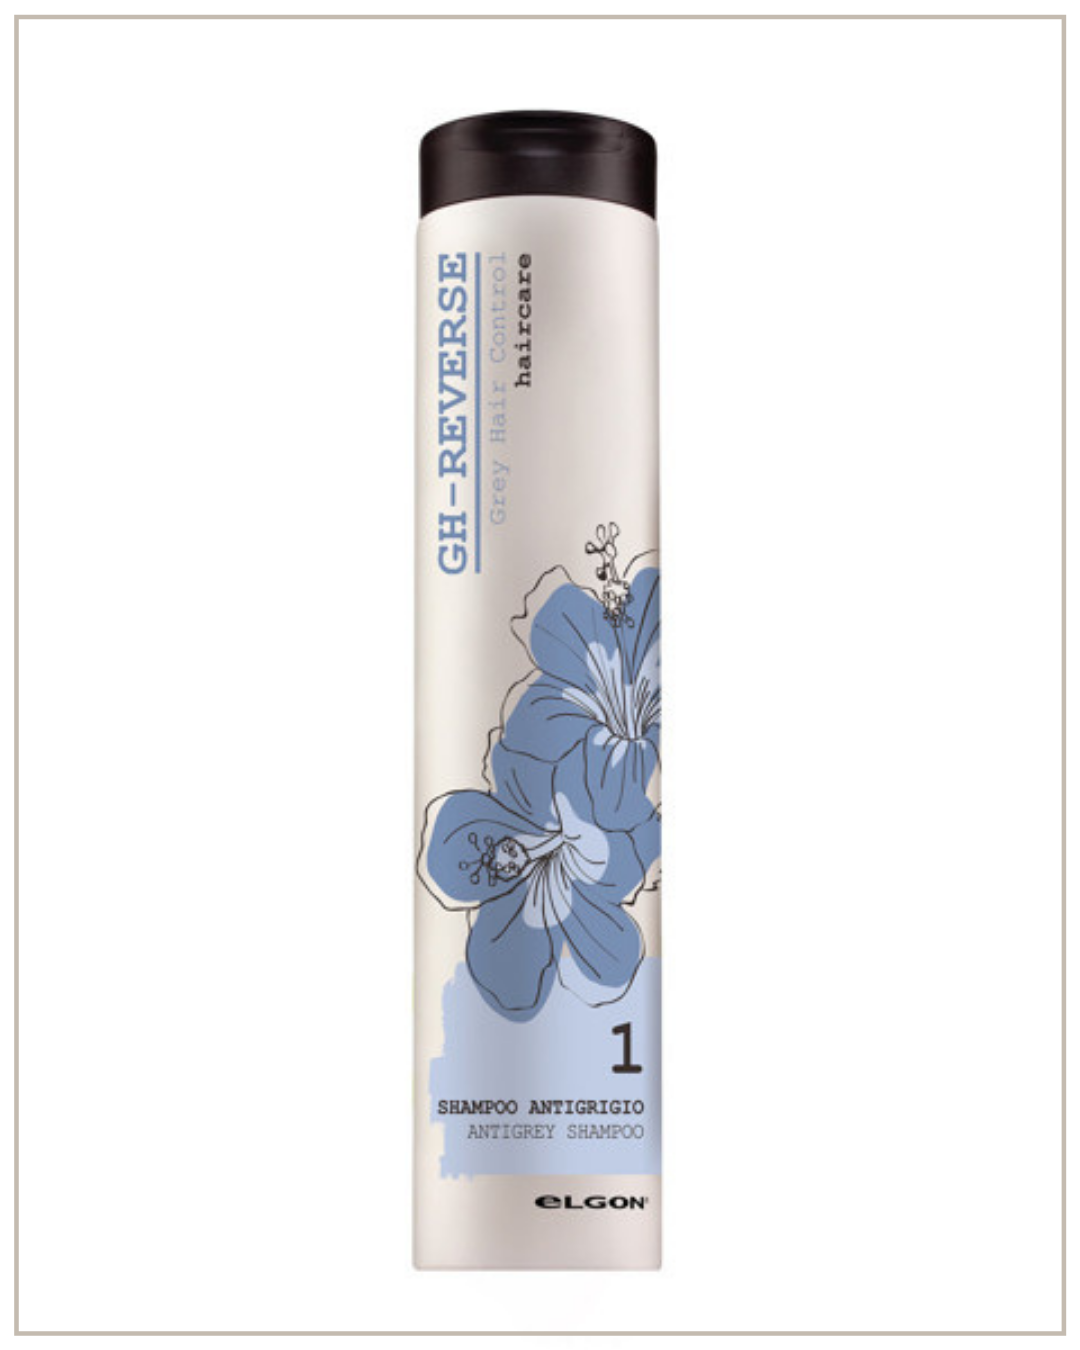 Žilų plaukų atsiradimą atitolinantis šampūnas ELGON GH-REVERSE Antigrey Shampoo, 250ml